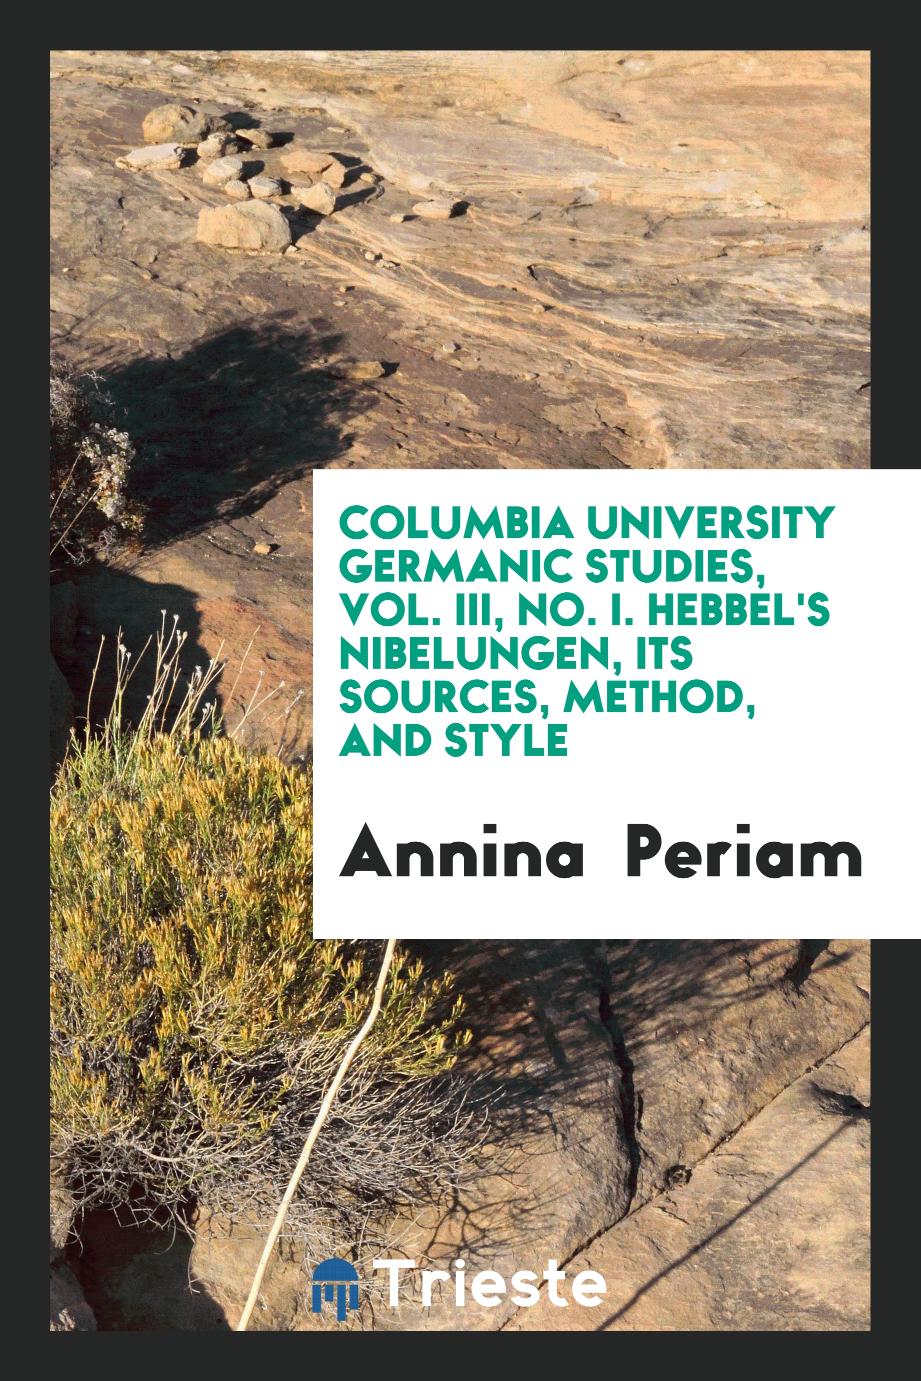 Columbia University Germanic Studies, Vol. III, No. I. Hebbel's Nibelungen, its sources, method, and style